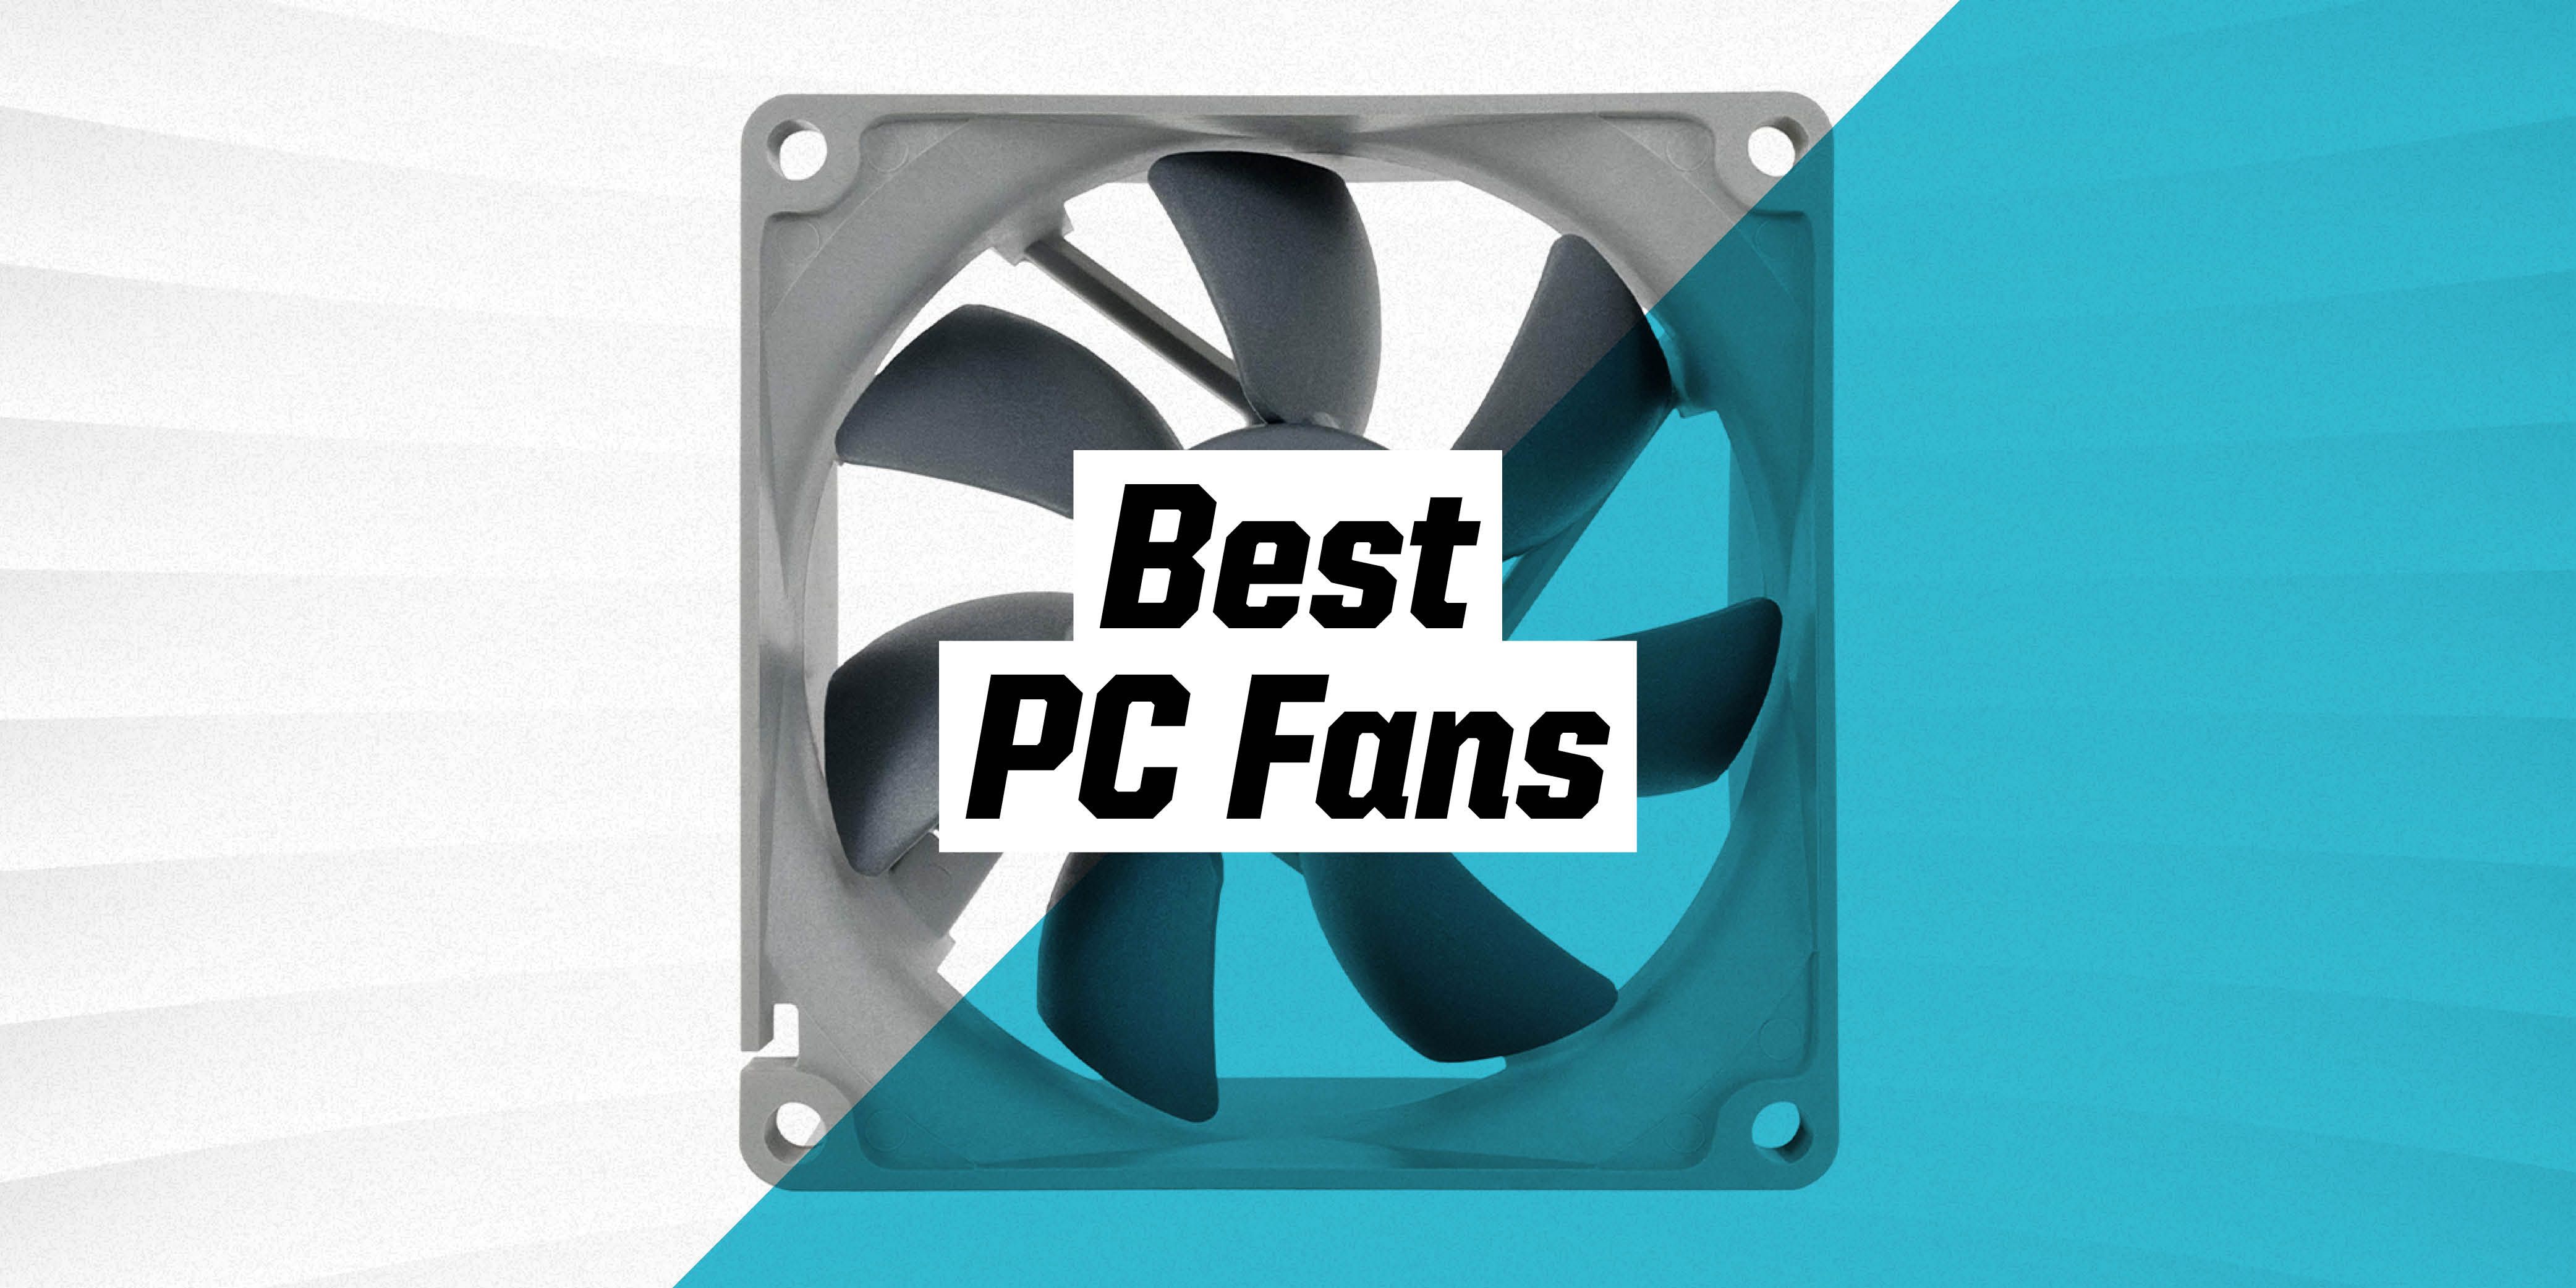 The Best PC Fans 2021 PC Fan Recommendations